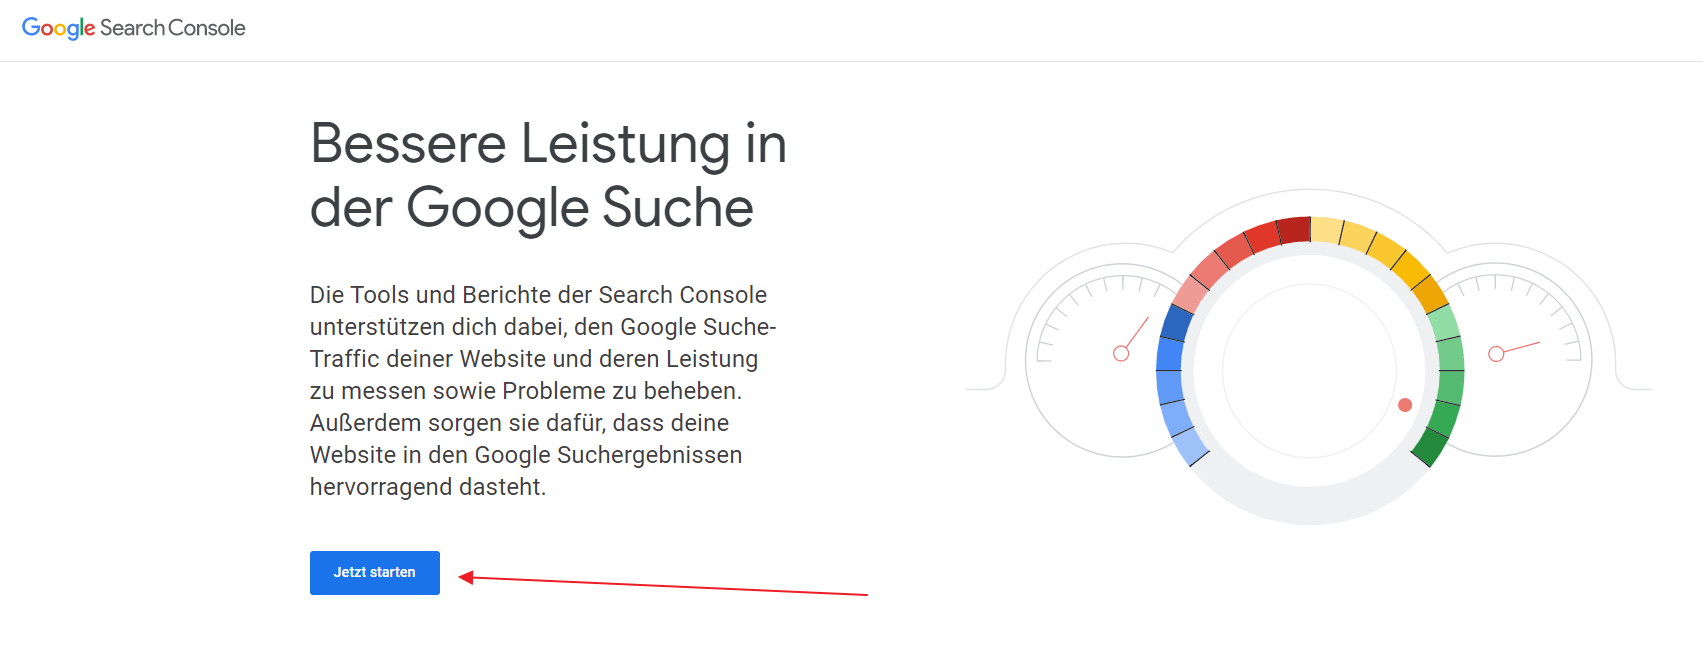 google search console jetzt starten